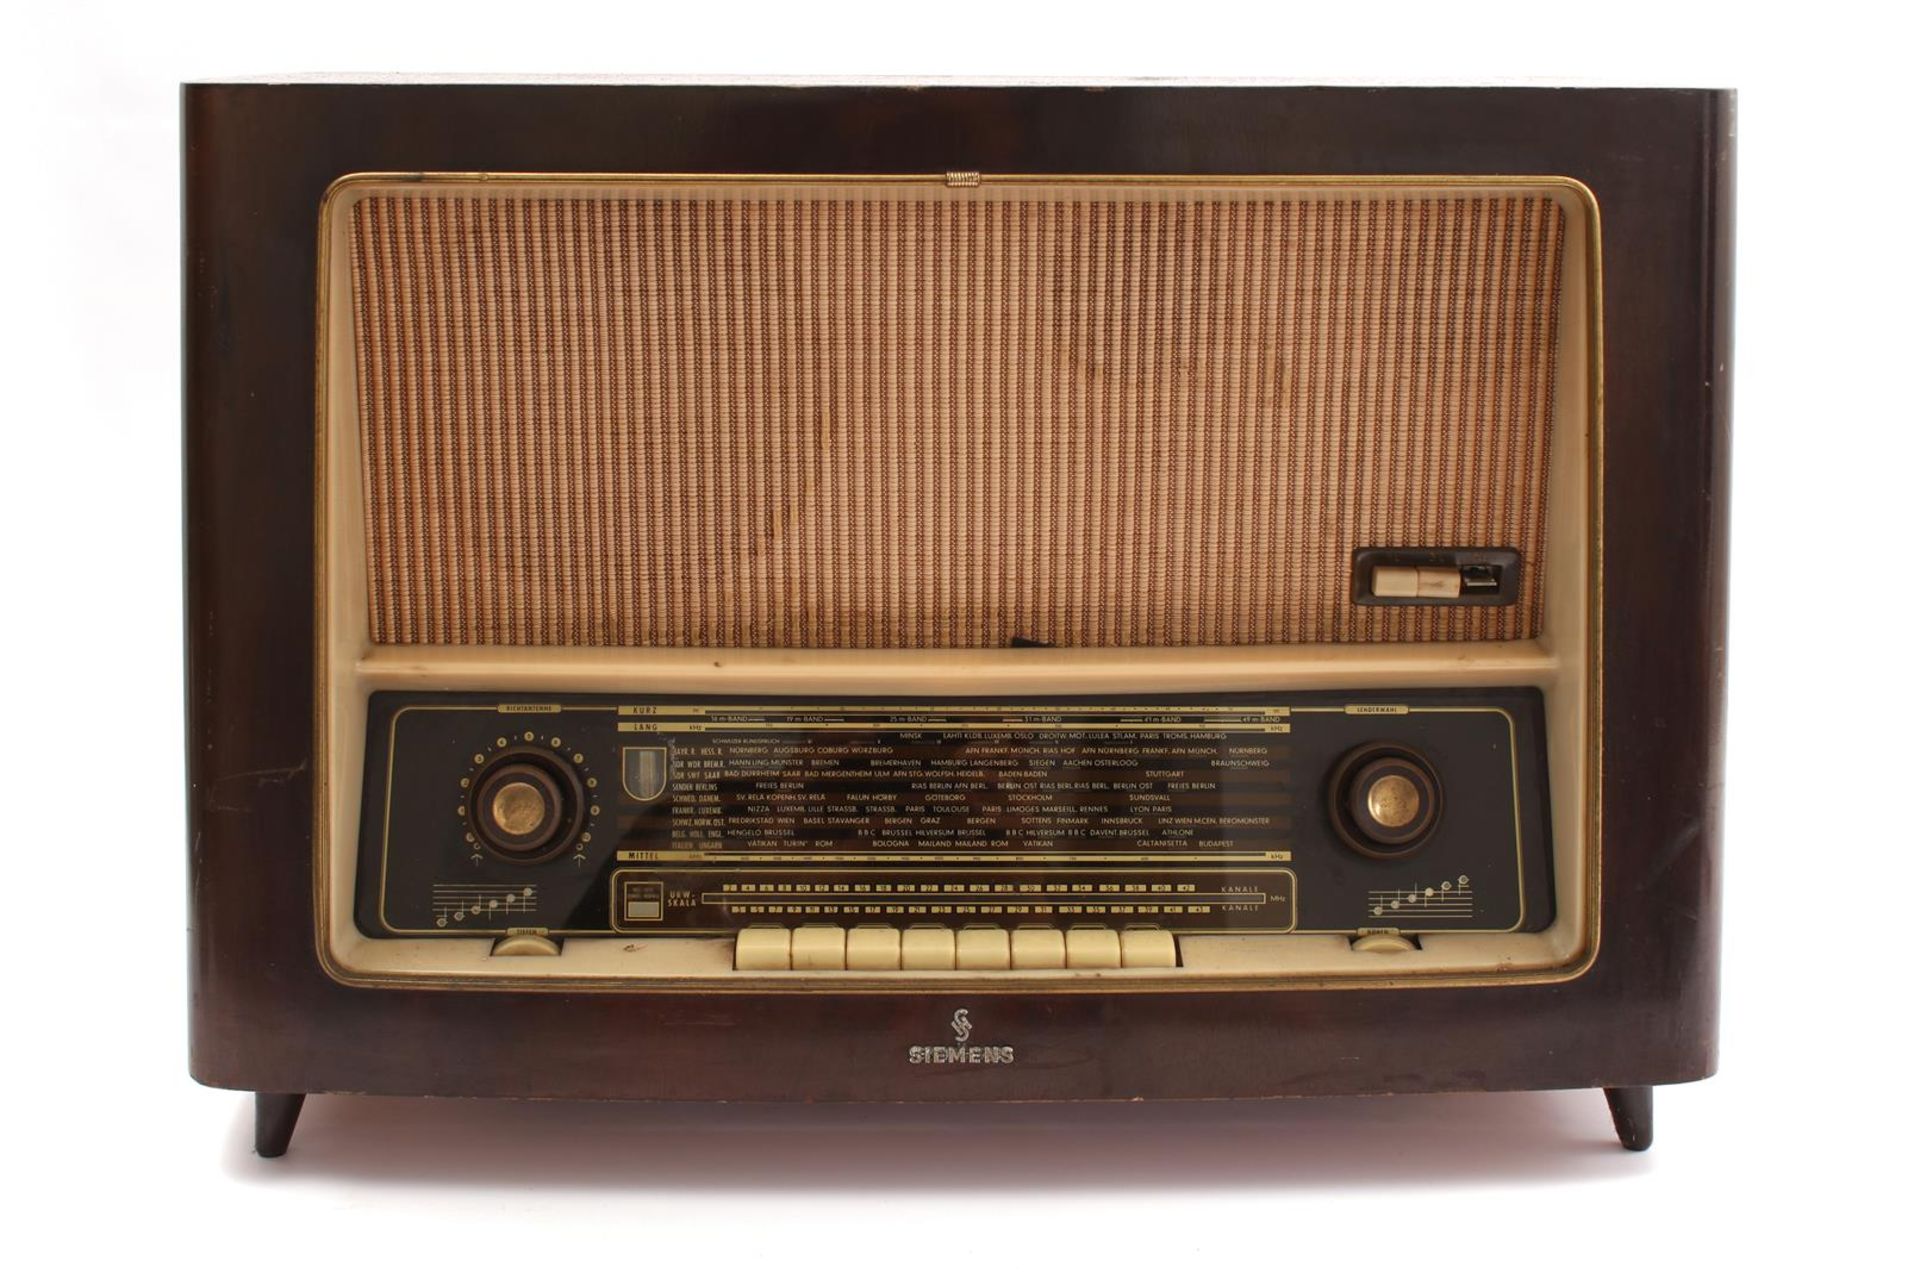 Siemens radio in wooden case